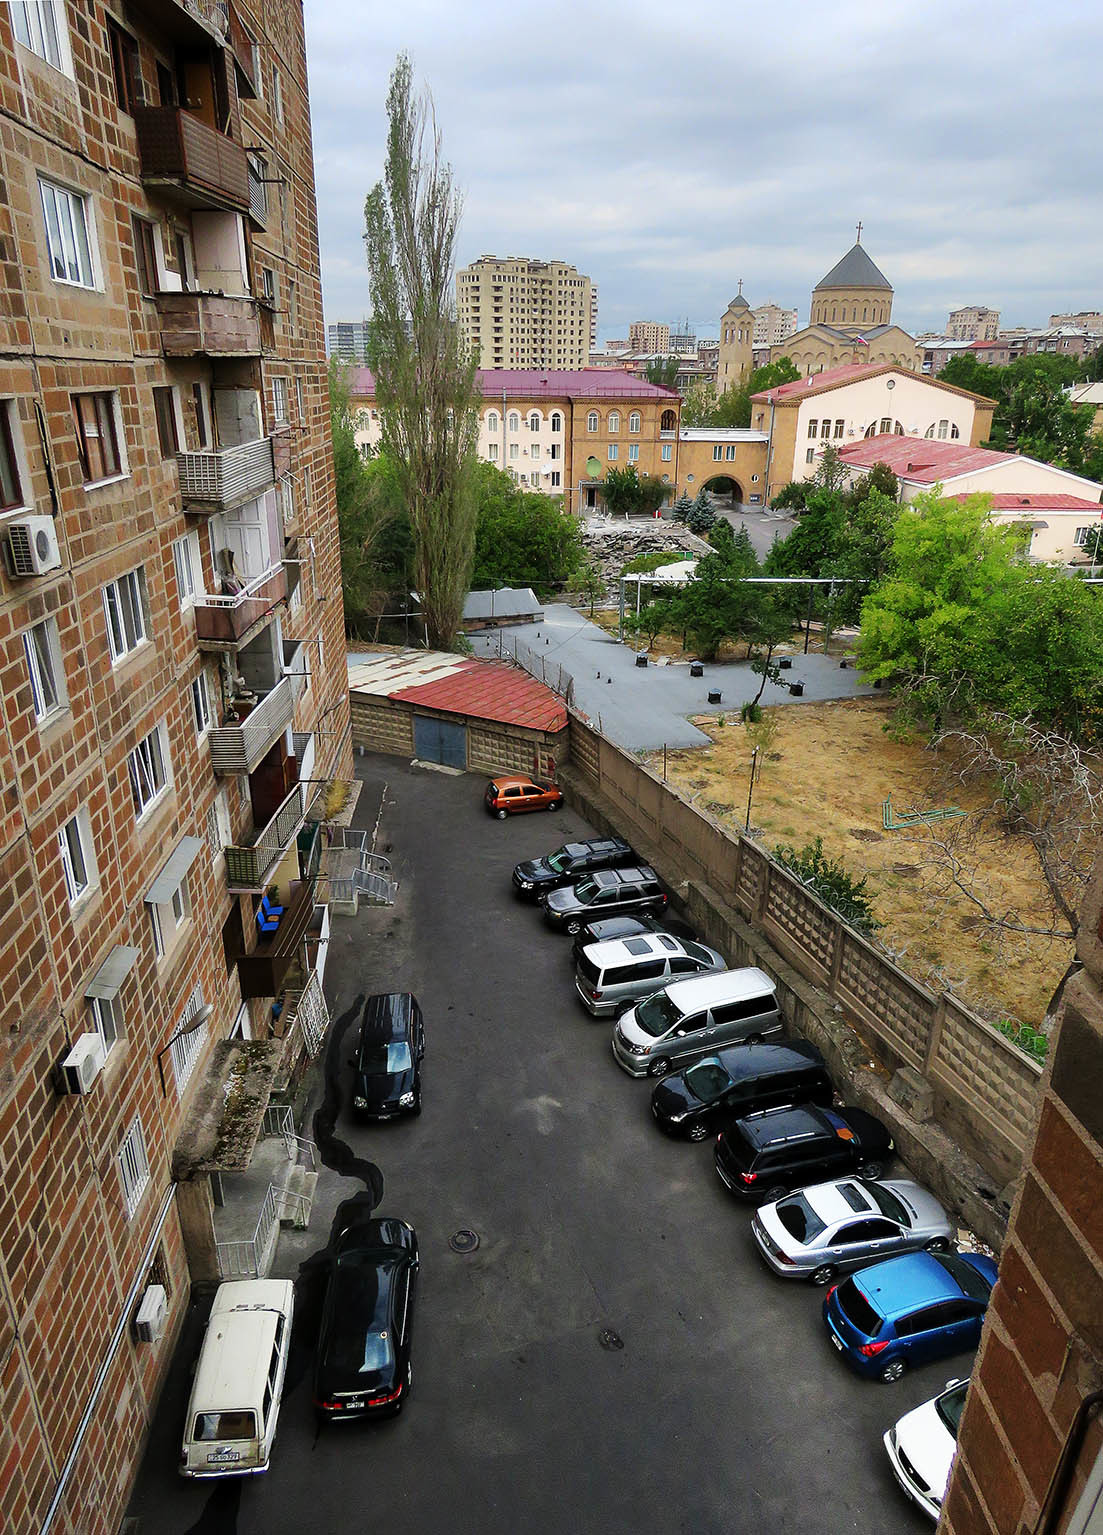 Ереван. Часть 1: парк Ахтанак и пейзаж с Араратом Армения,дорожное